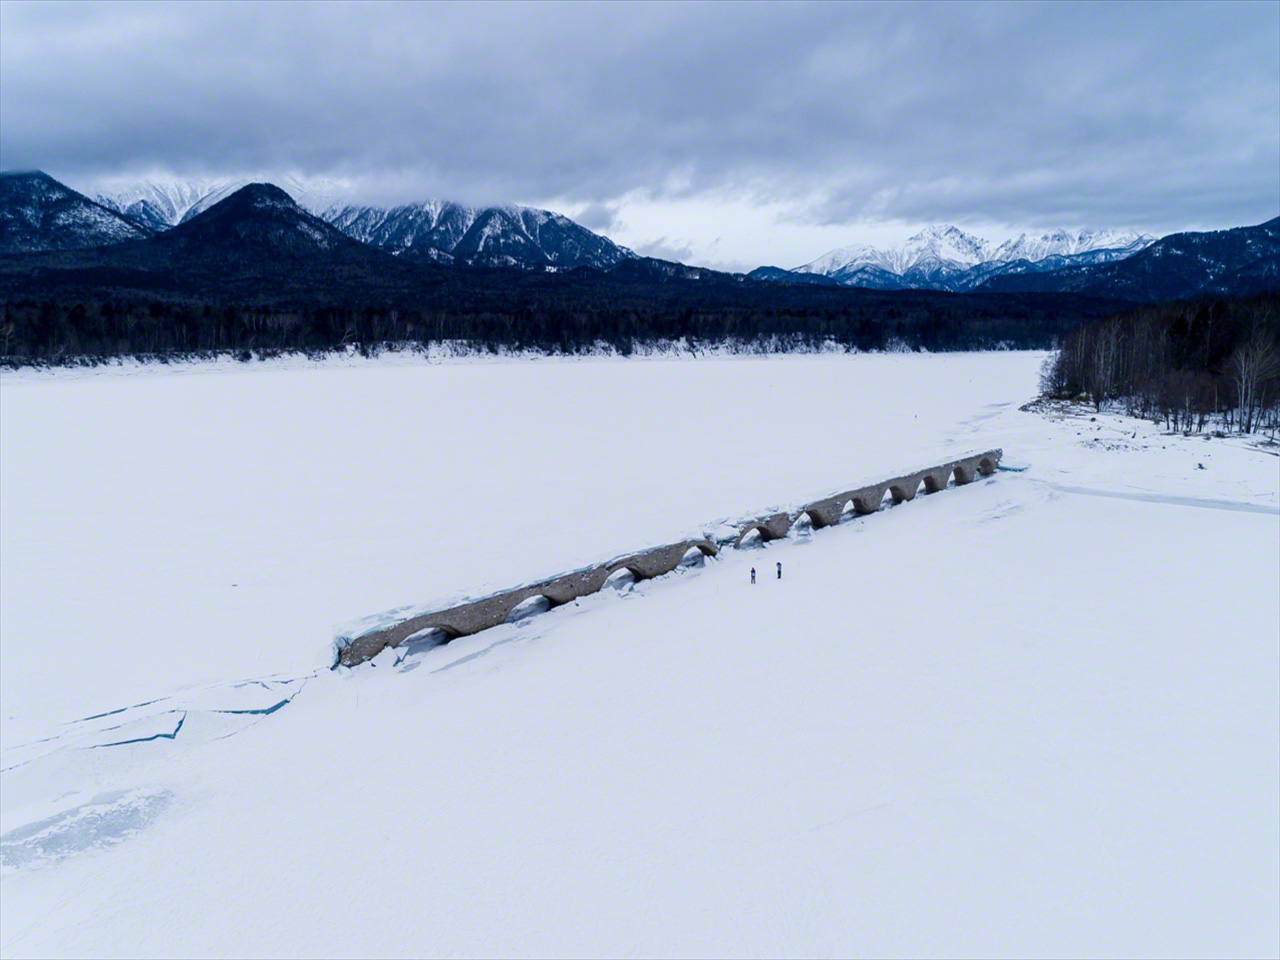 Al disminuir el nivel del pantano en enero, el puente emerge de la superficie helada del lago, rodeado por las montañas de la sierra Higashi Daisetsuzan.